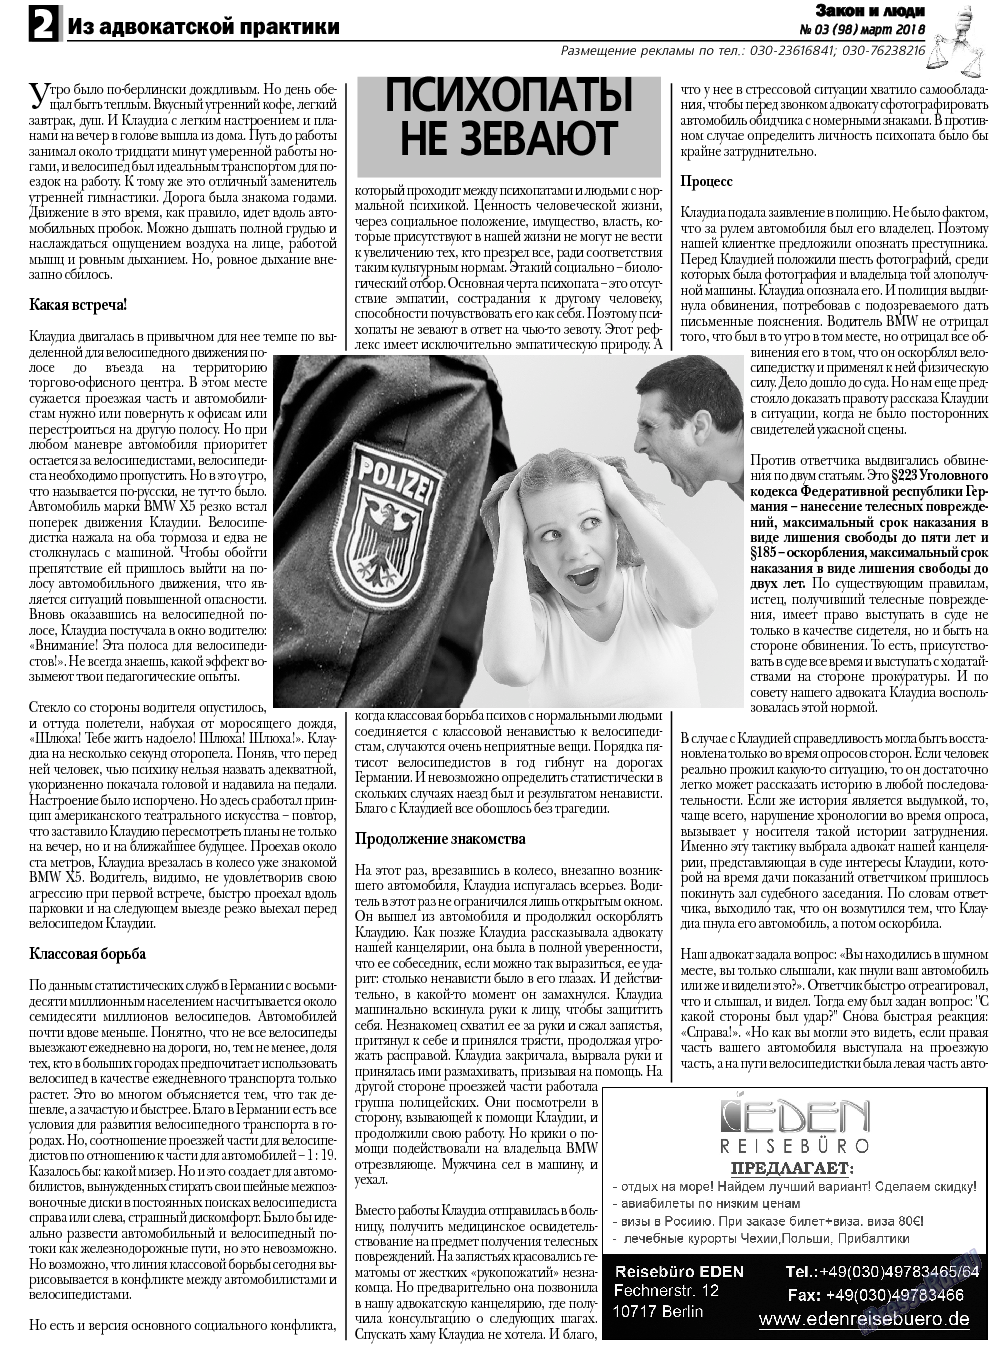 Закон и люди, газета. 2018 №3 стр.2